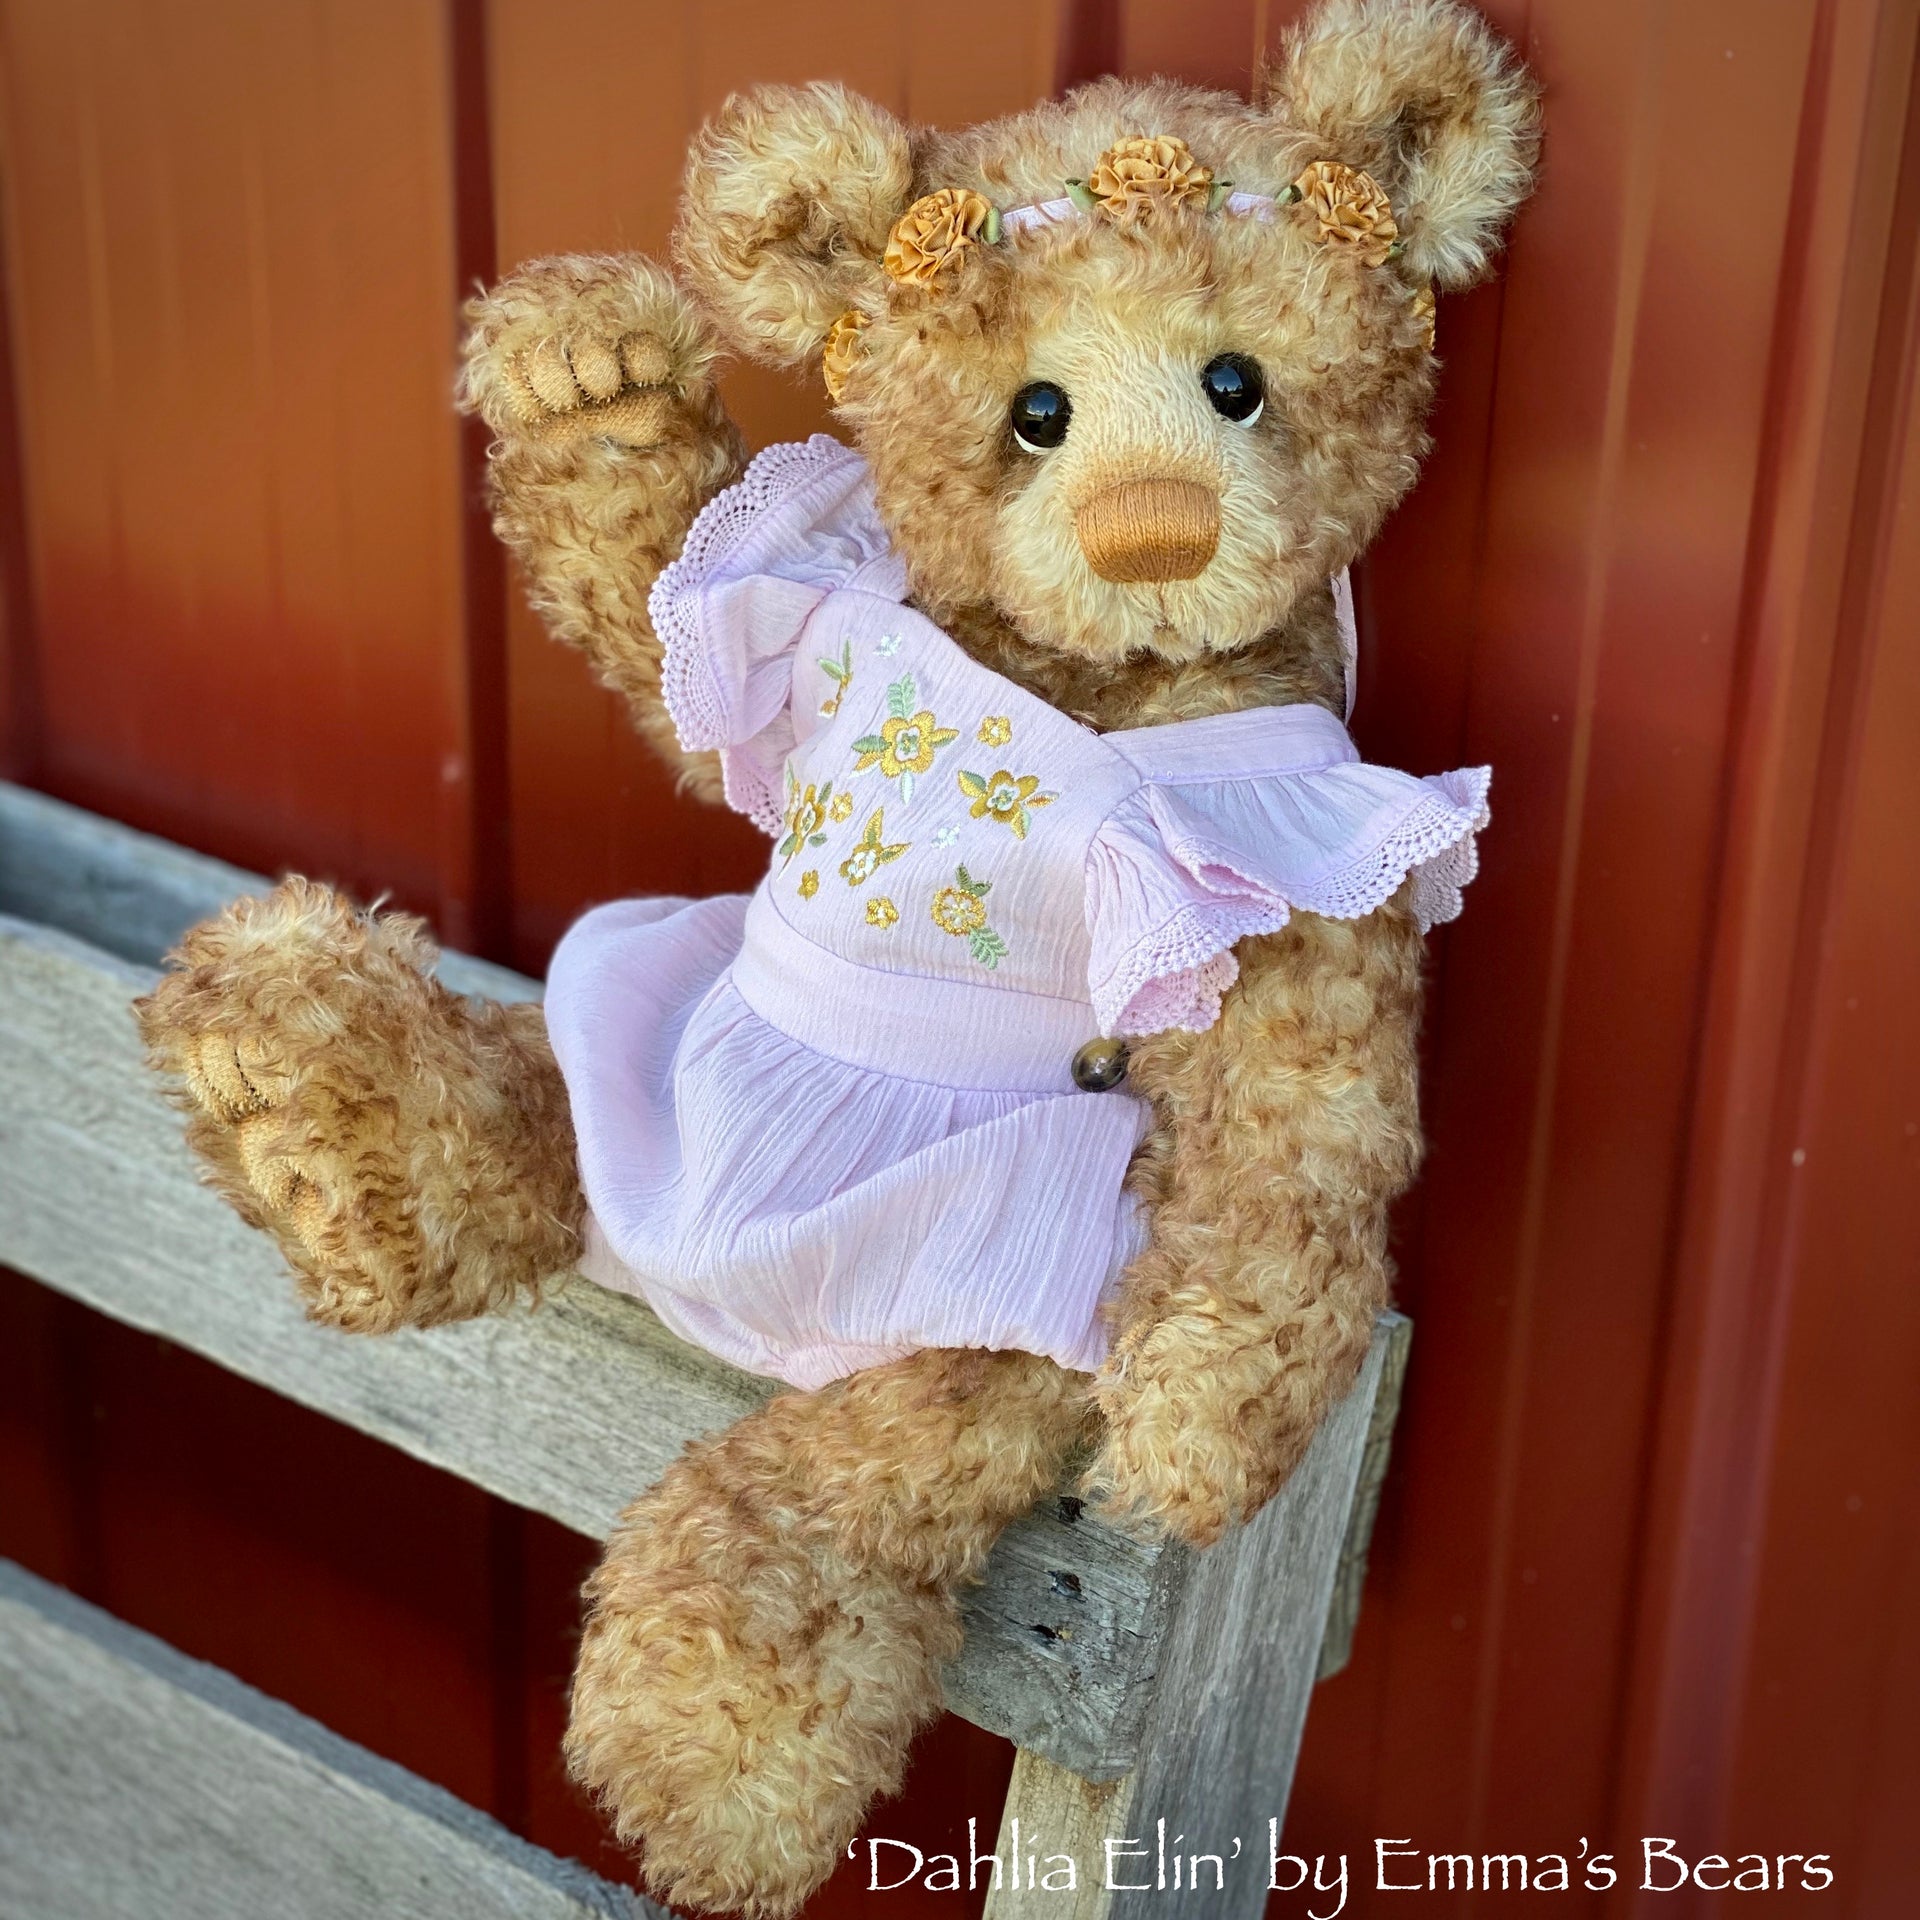 Dahlia Elin - 18" Artist Baby Bear by Emma's Bears - OOAK